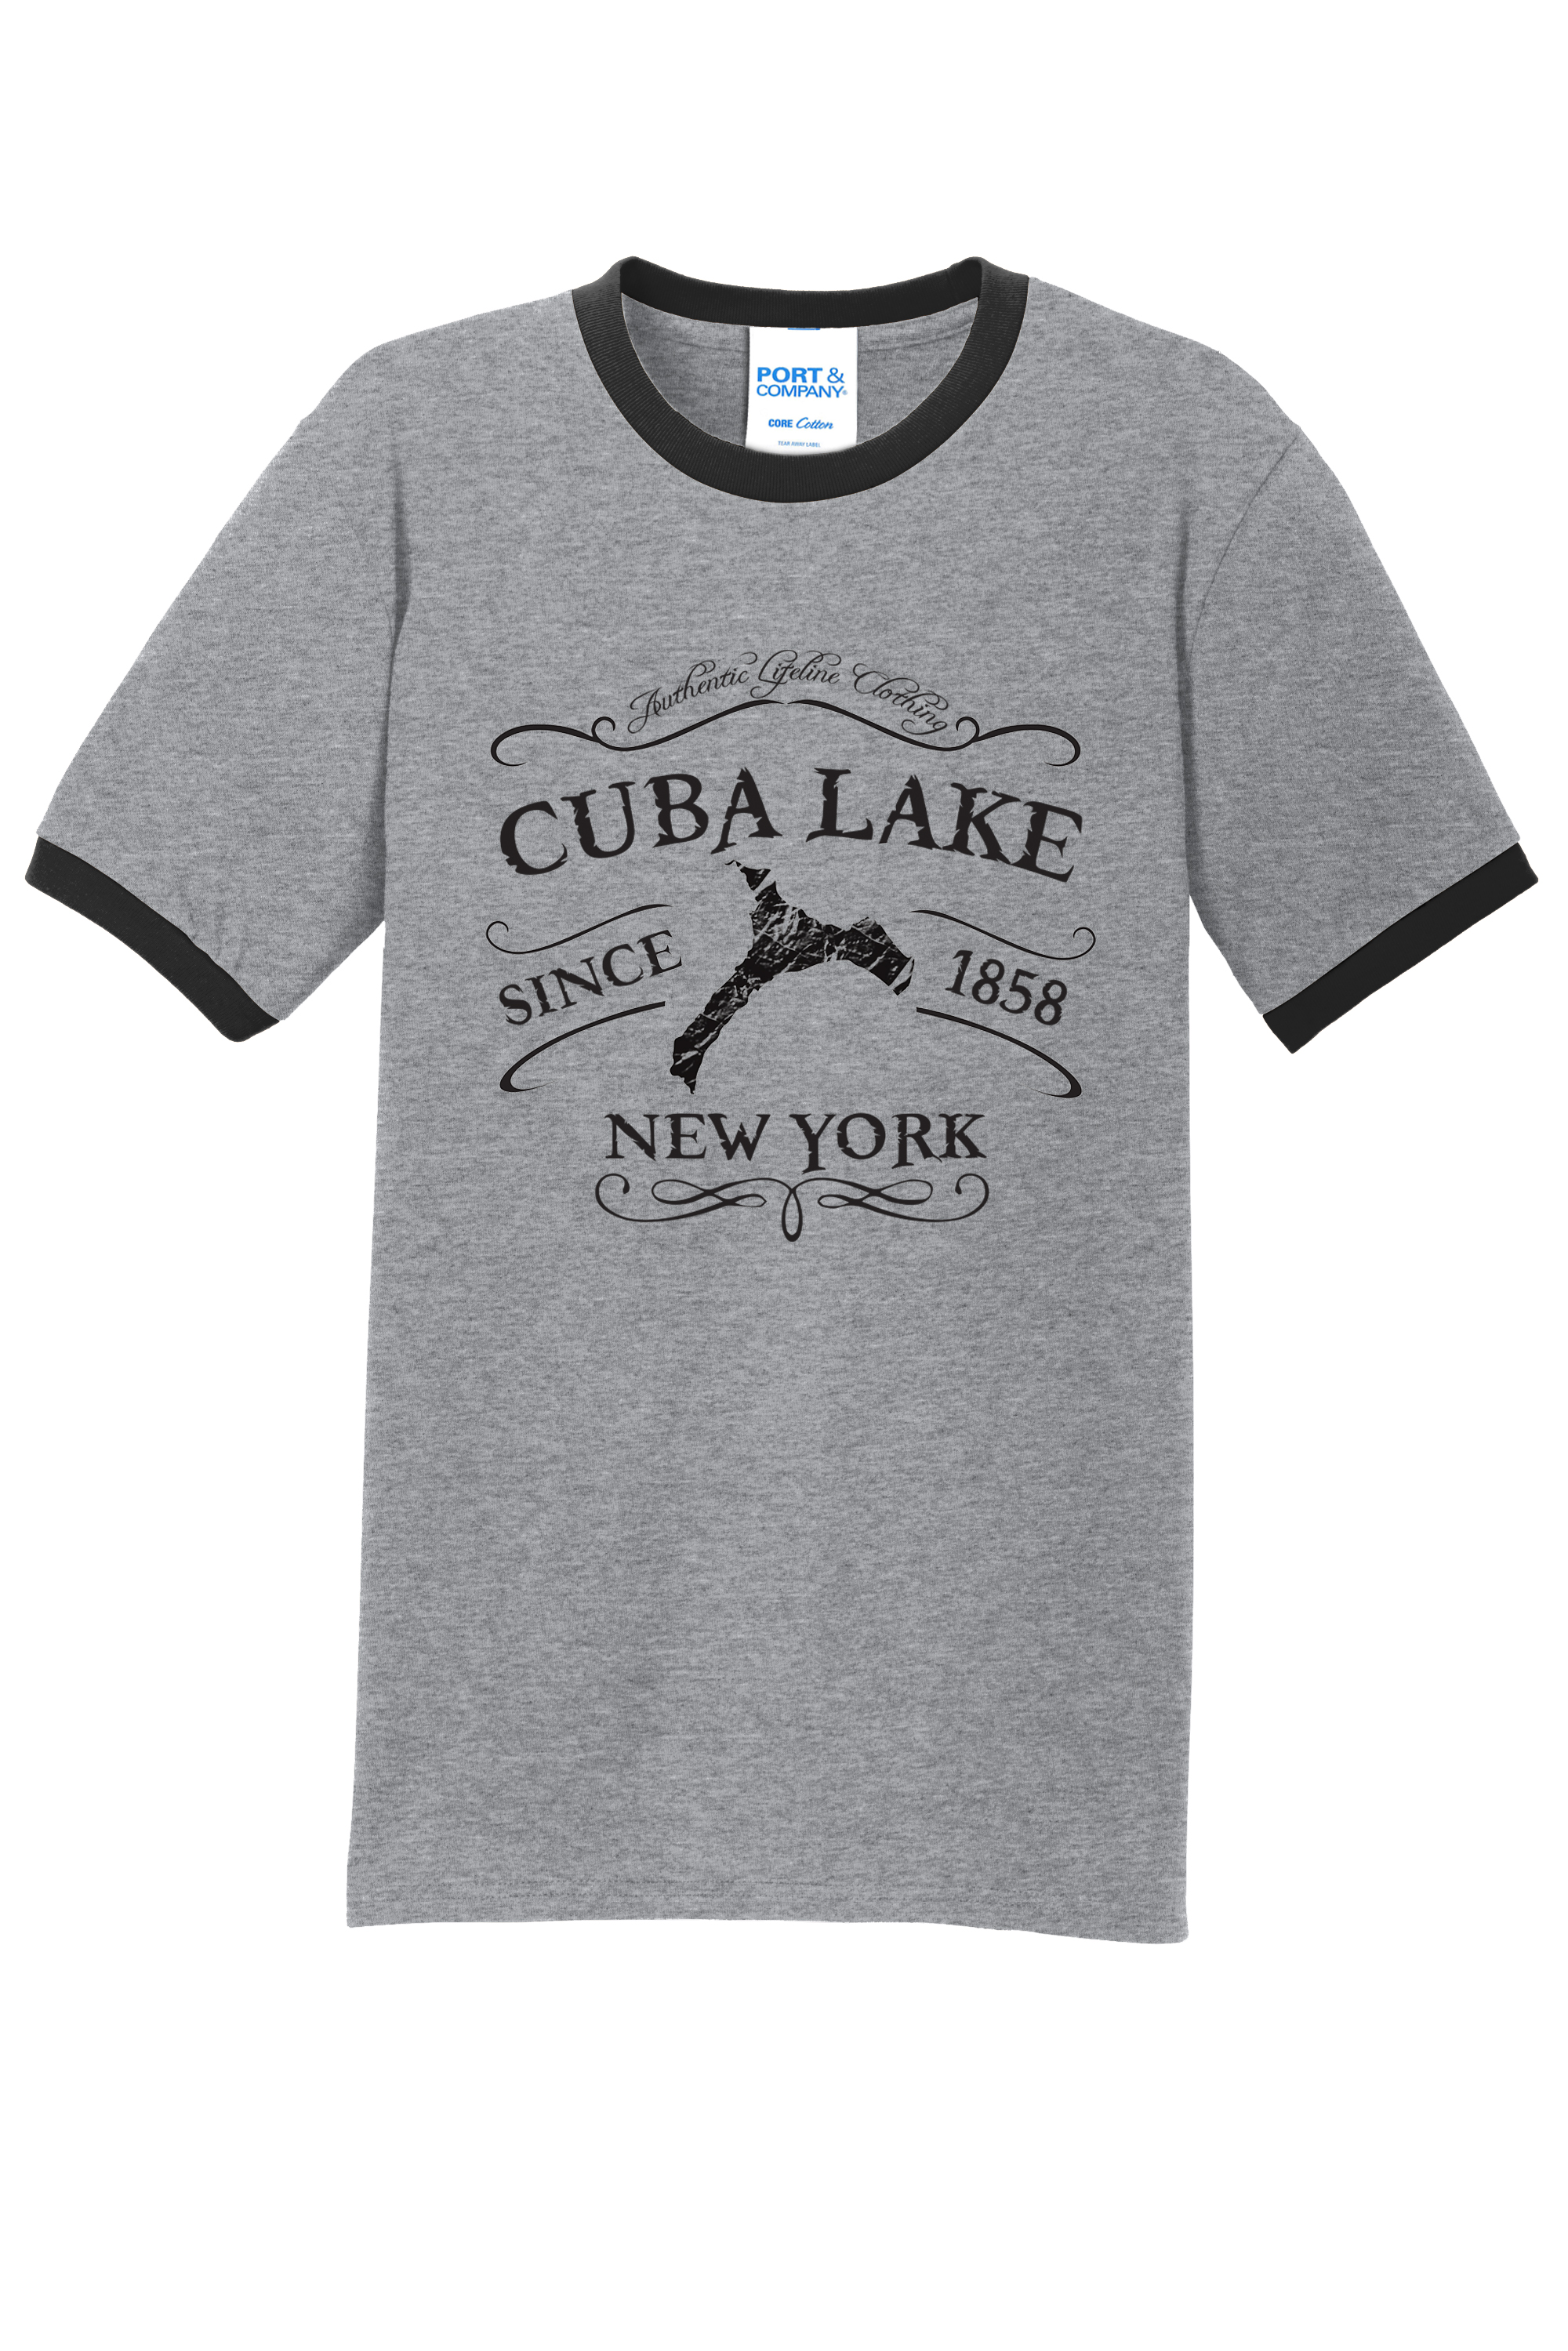 CUBA LAKE - Port & Company® Core Cotton Ringer Tee